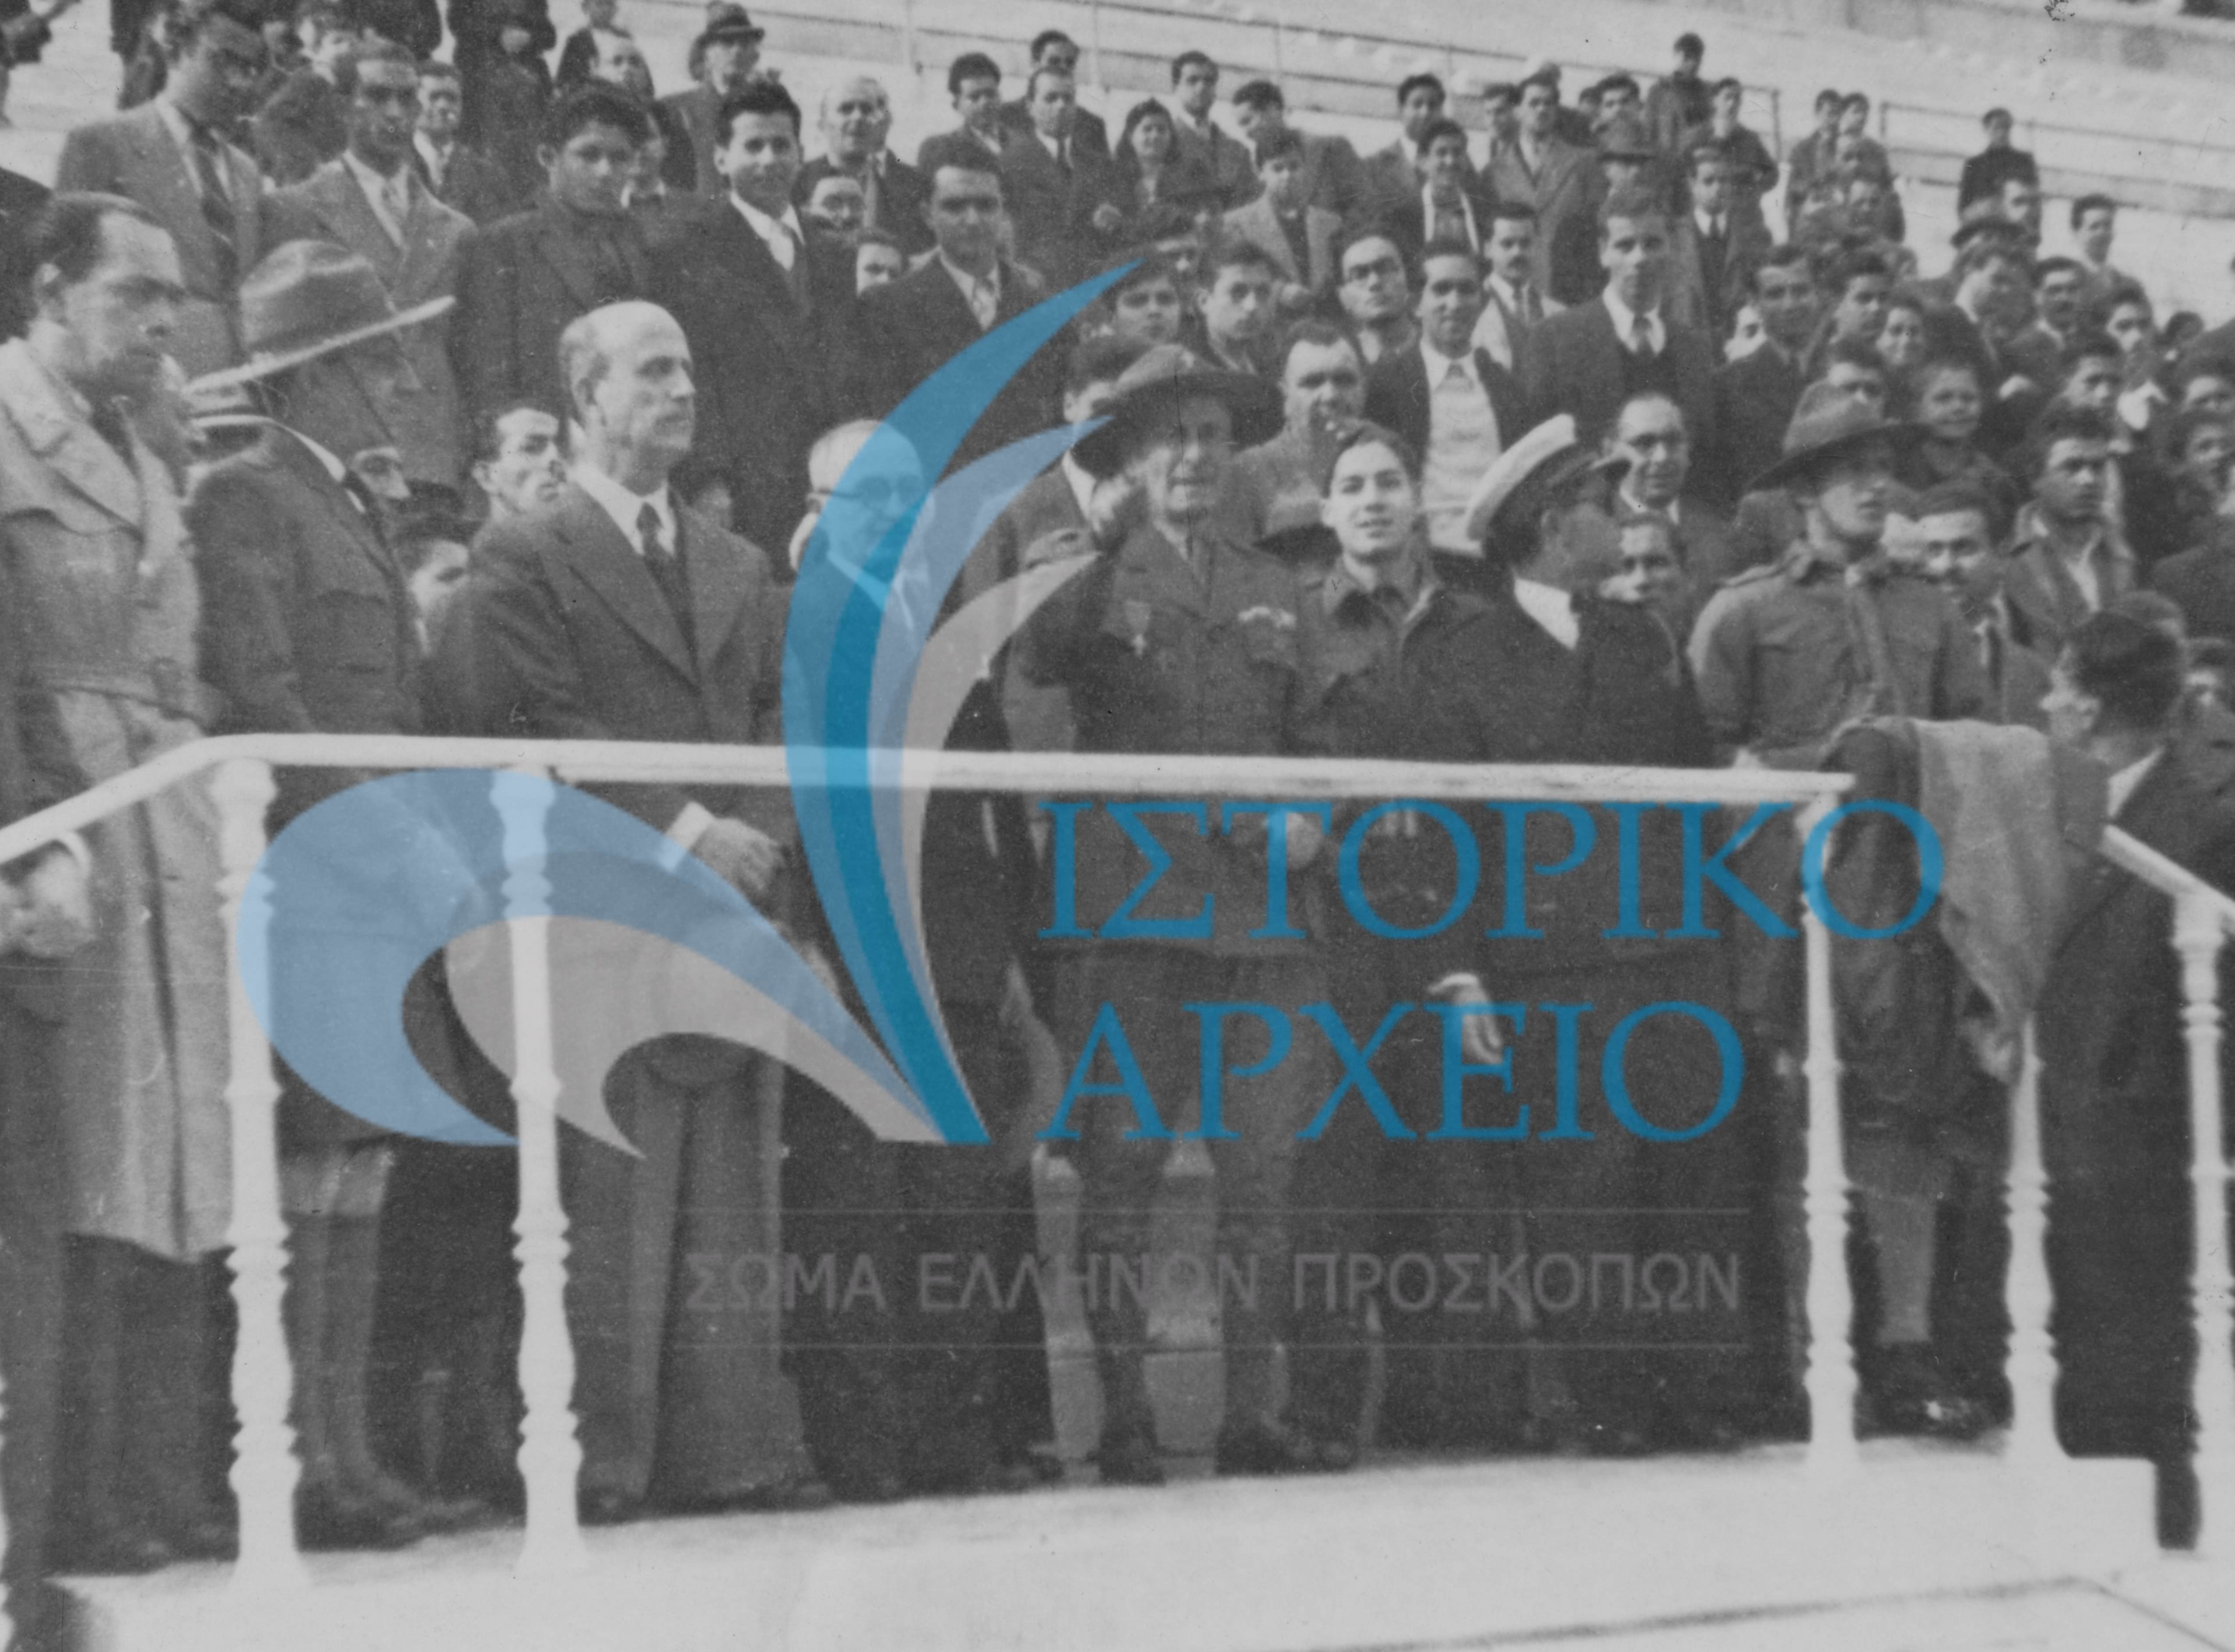 Συγκέντρωση όλων των Προσκόπων στο Παναθηναϊκό Στάδιο μετά την Απελευθέρωση το 1945. Διακρίνονται ο ΓΕ Λ. Πτέρης, ο ΓΓ Η. Ησαίας και ο σύμβουλος Μιχ. Μαντούδης.